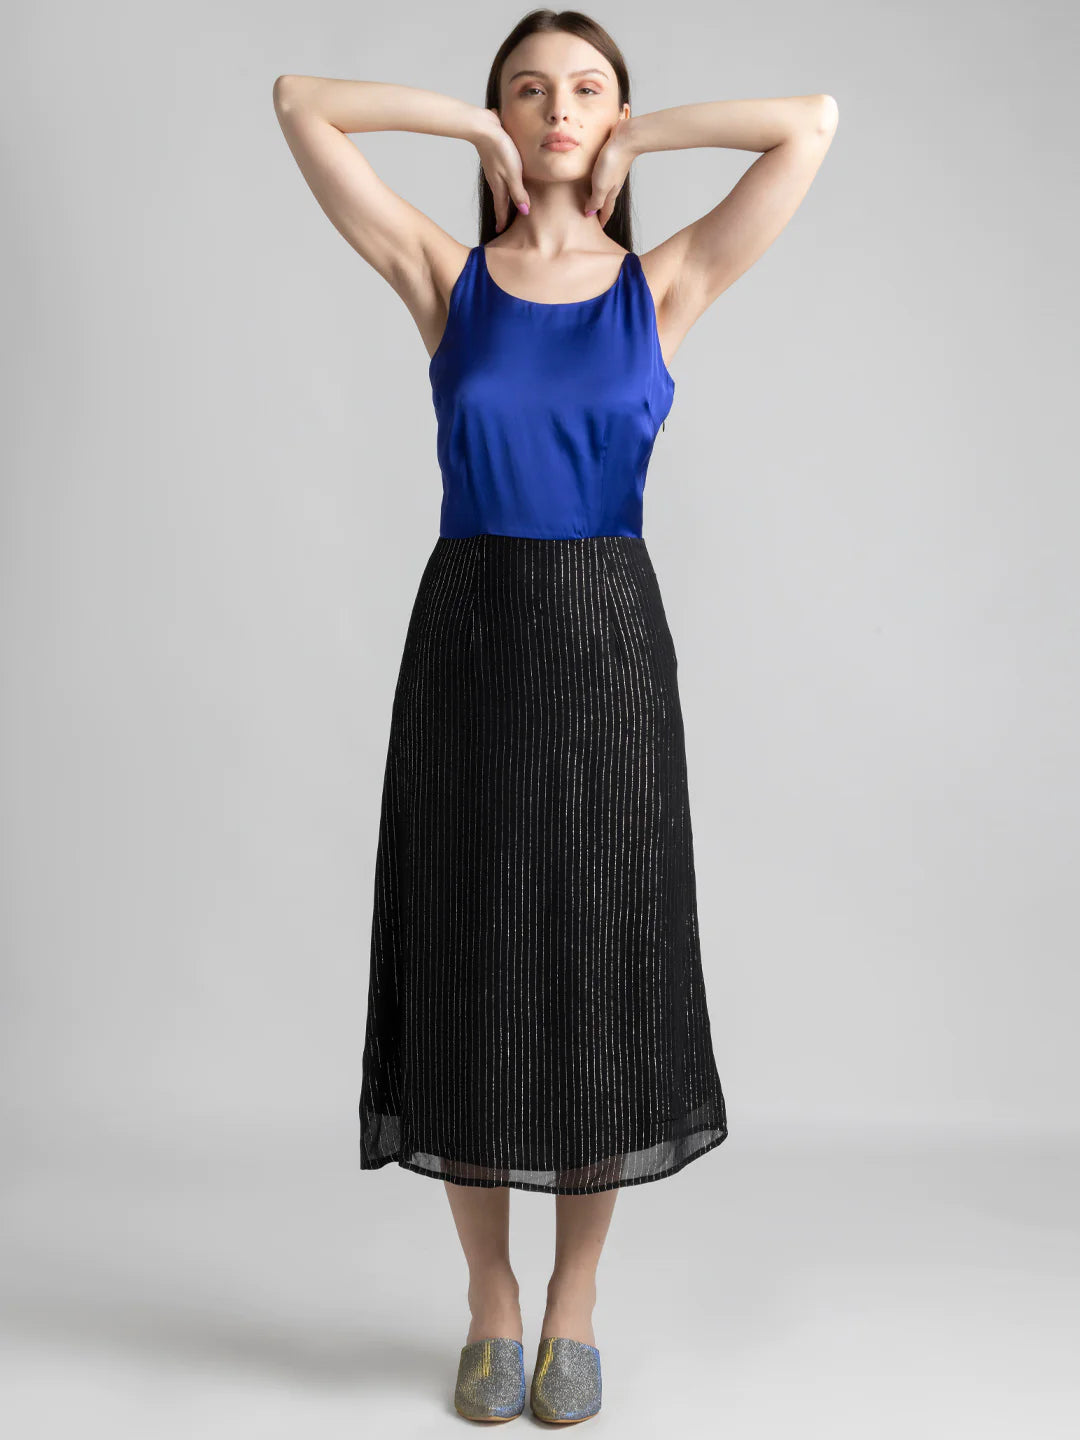 Blue & Black Midi Dress | Satin & Lurex Glam Midi Dress